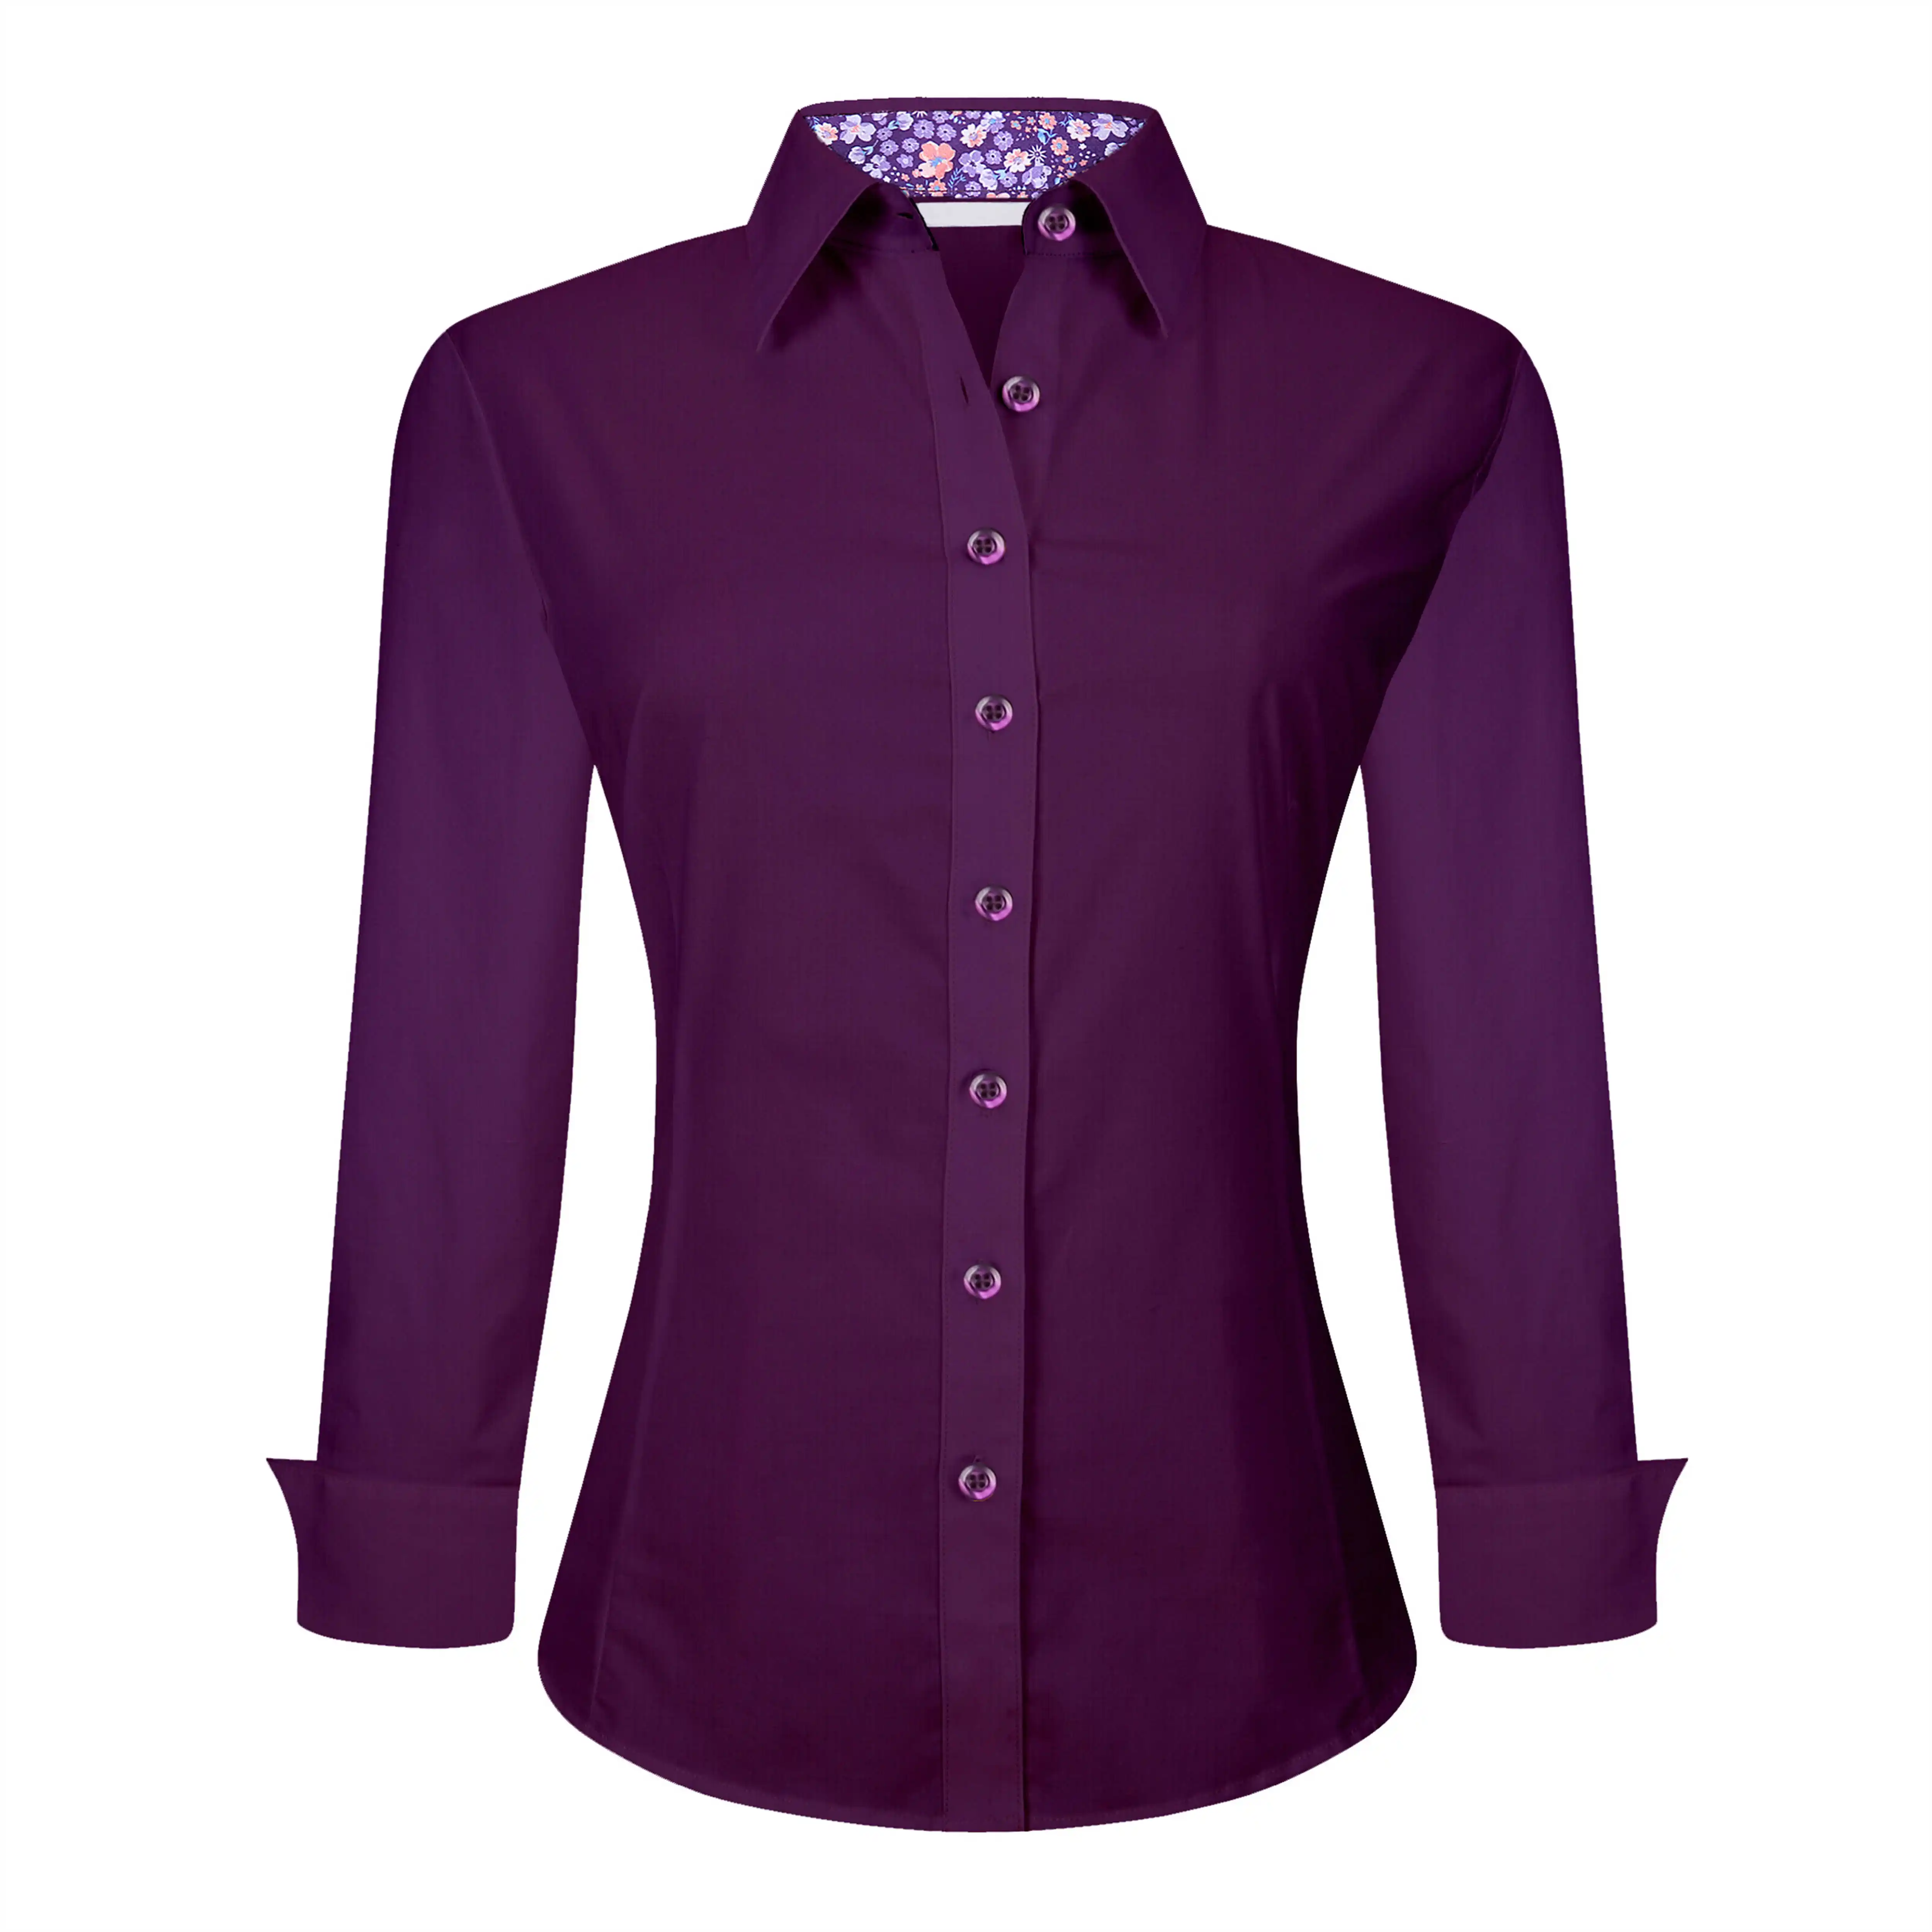 OEM/ODM Camisa Para Mujeres Spring Female Blouse Purple Long Sleeve Loose Office Ladies Blouses shirt